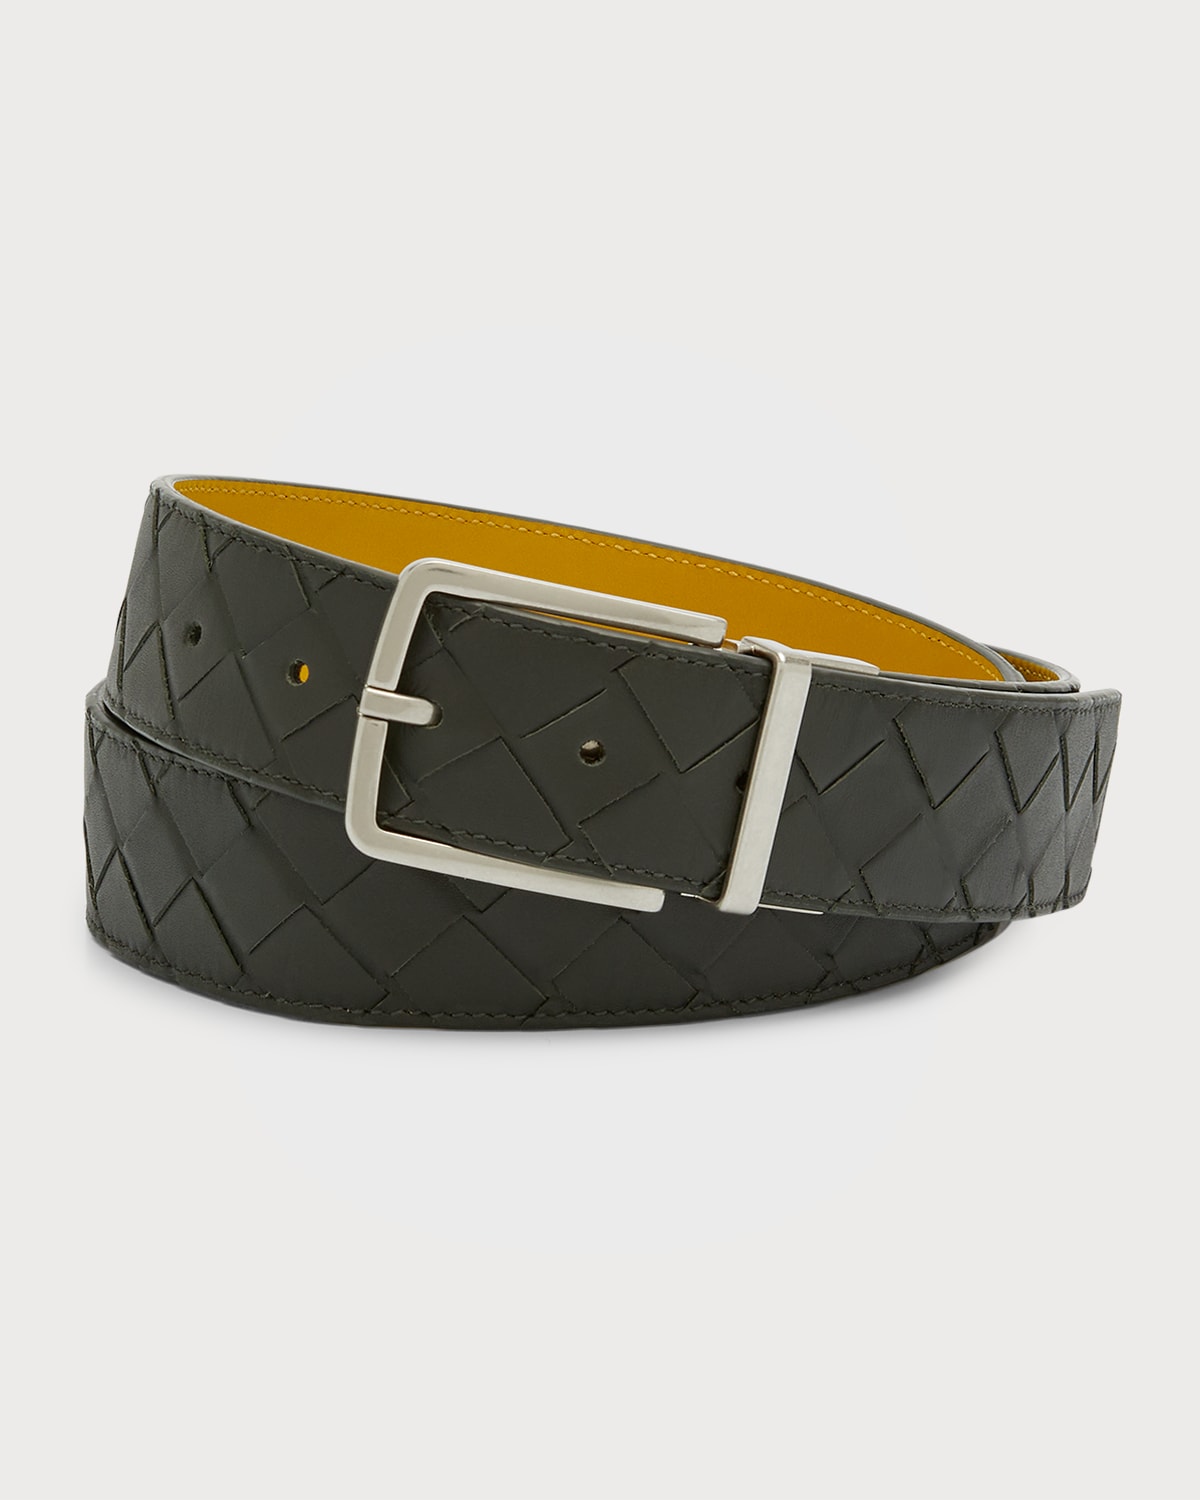 Bottega Veneta Men's Reversible Intrecciato Leather Belt In Loden